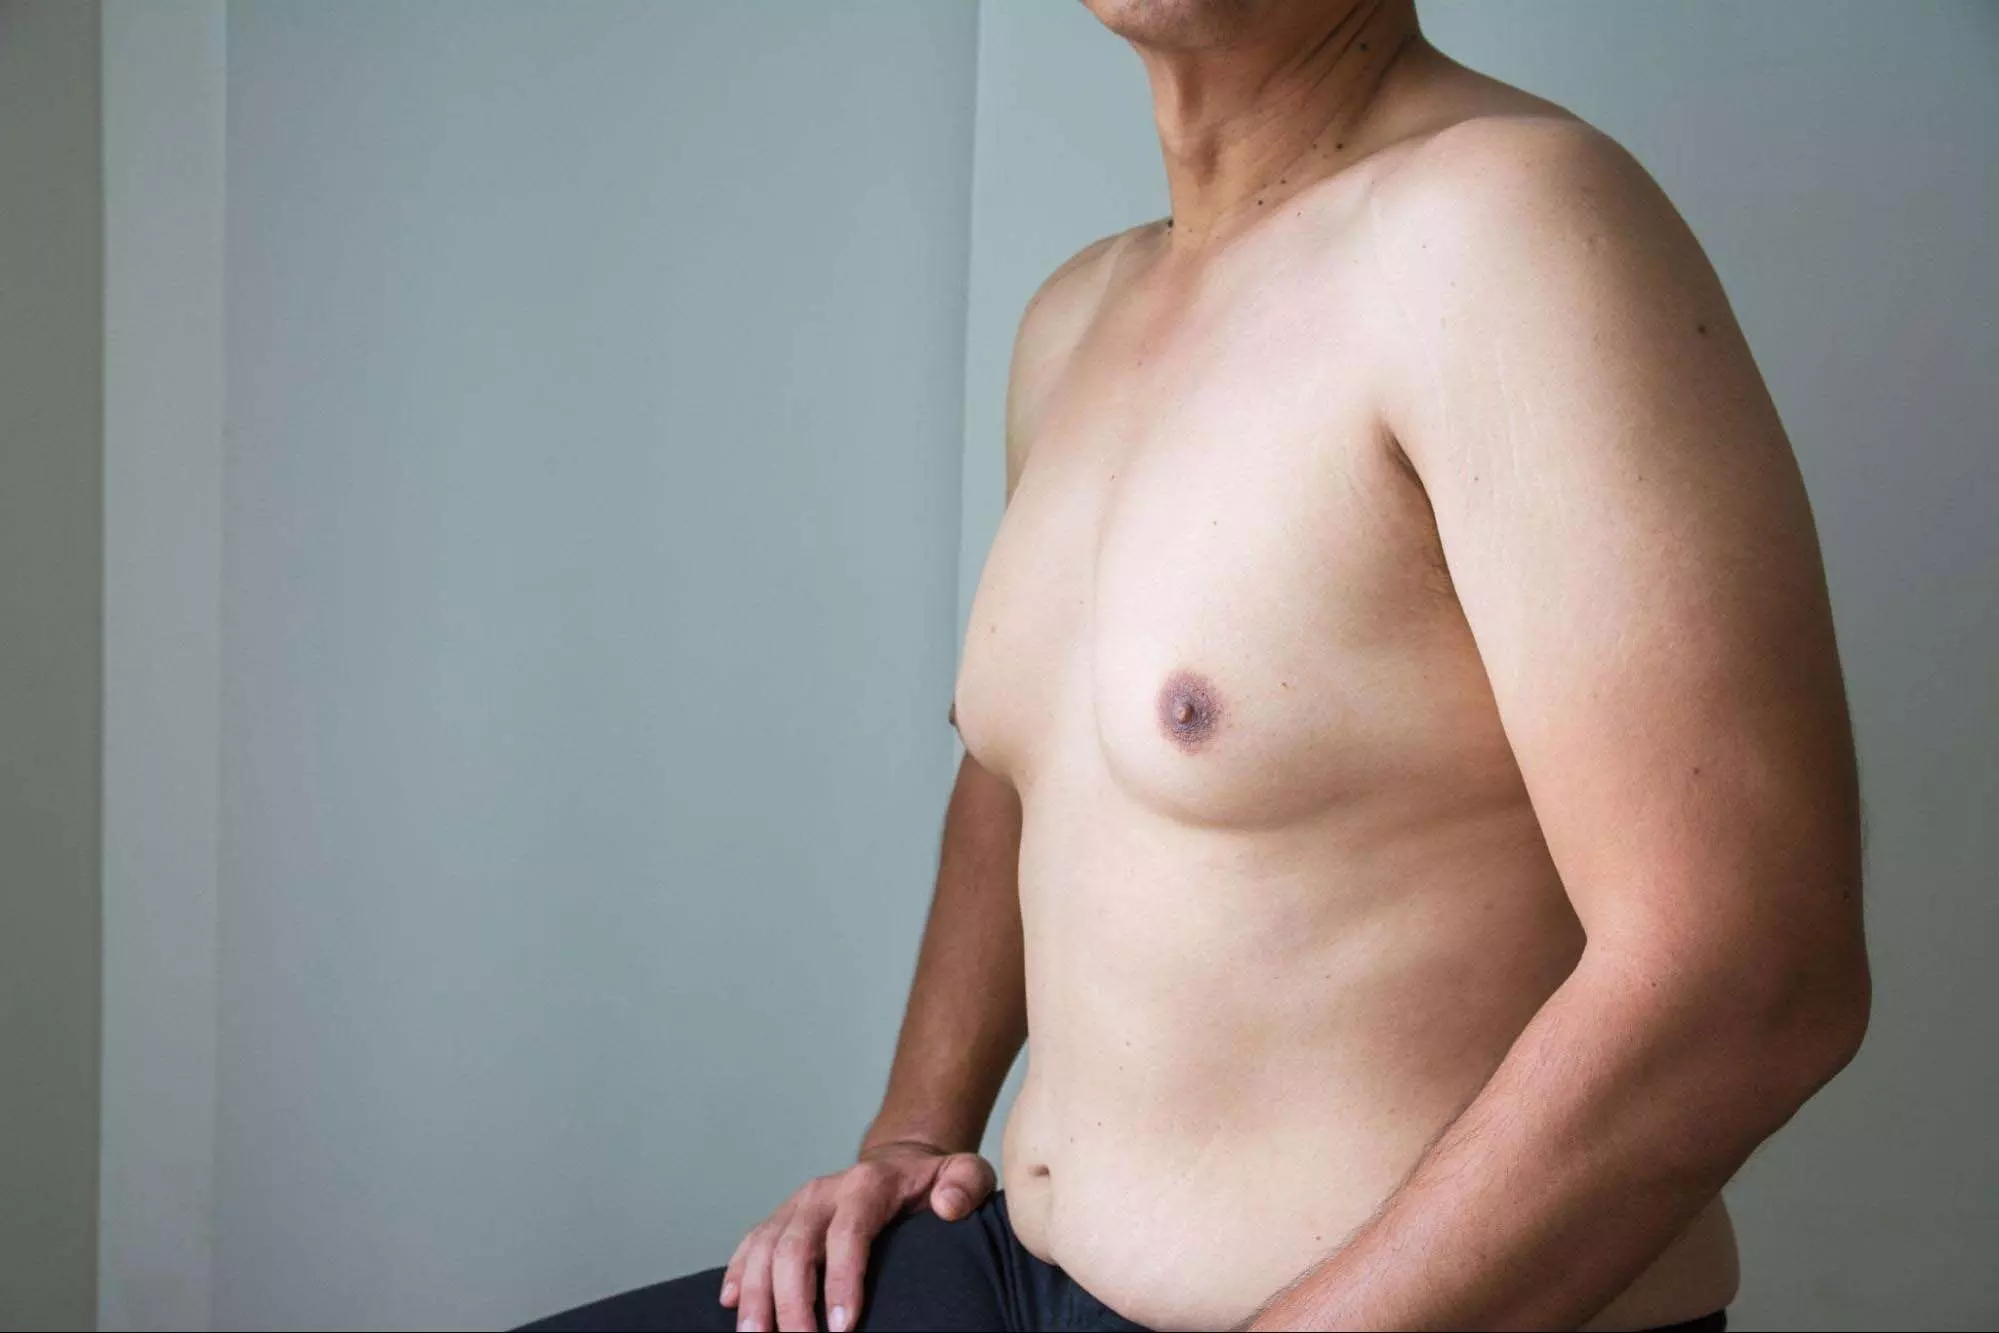 Male breasts वृद्धि सामाजिक चिंता और शर्मिंदगी का कारण